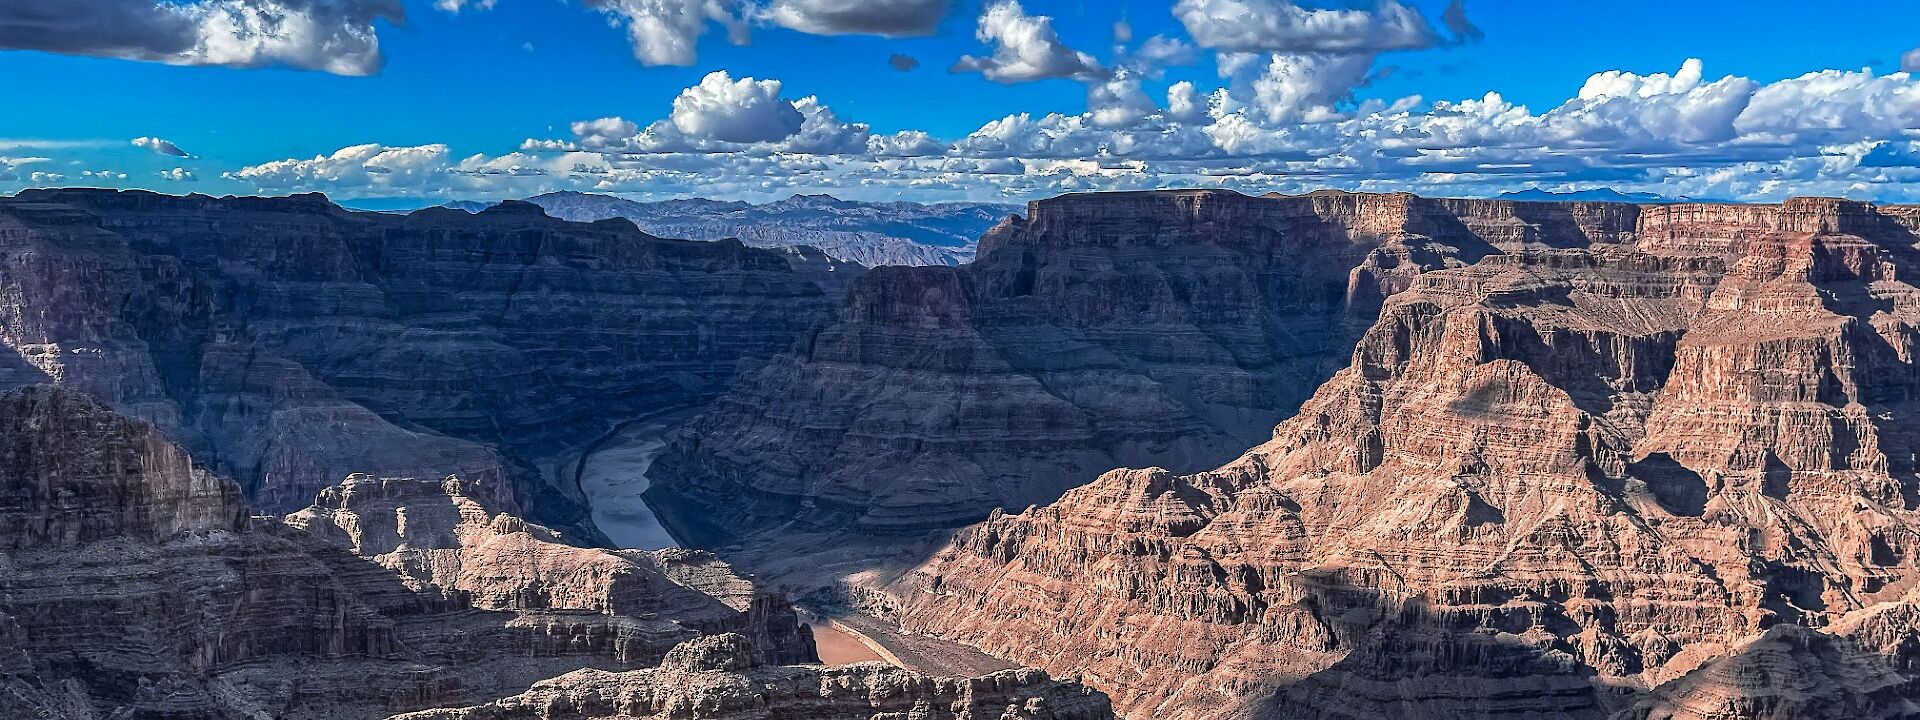 Grand Canyon West Rim, Arizona, USA. Unsplash: Fynephoqus